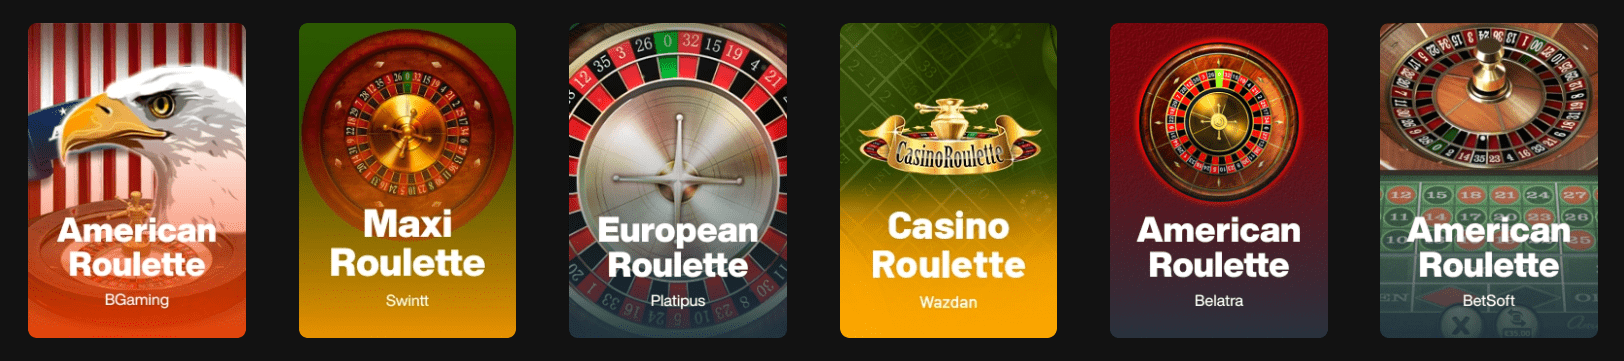 Just Casino Online Deutschland